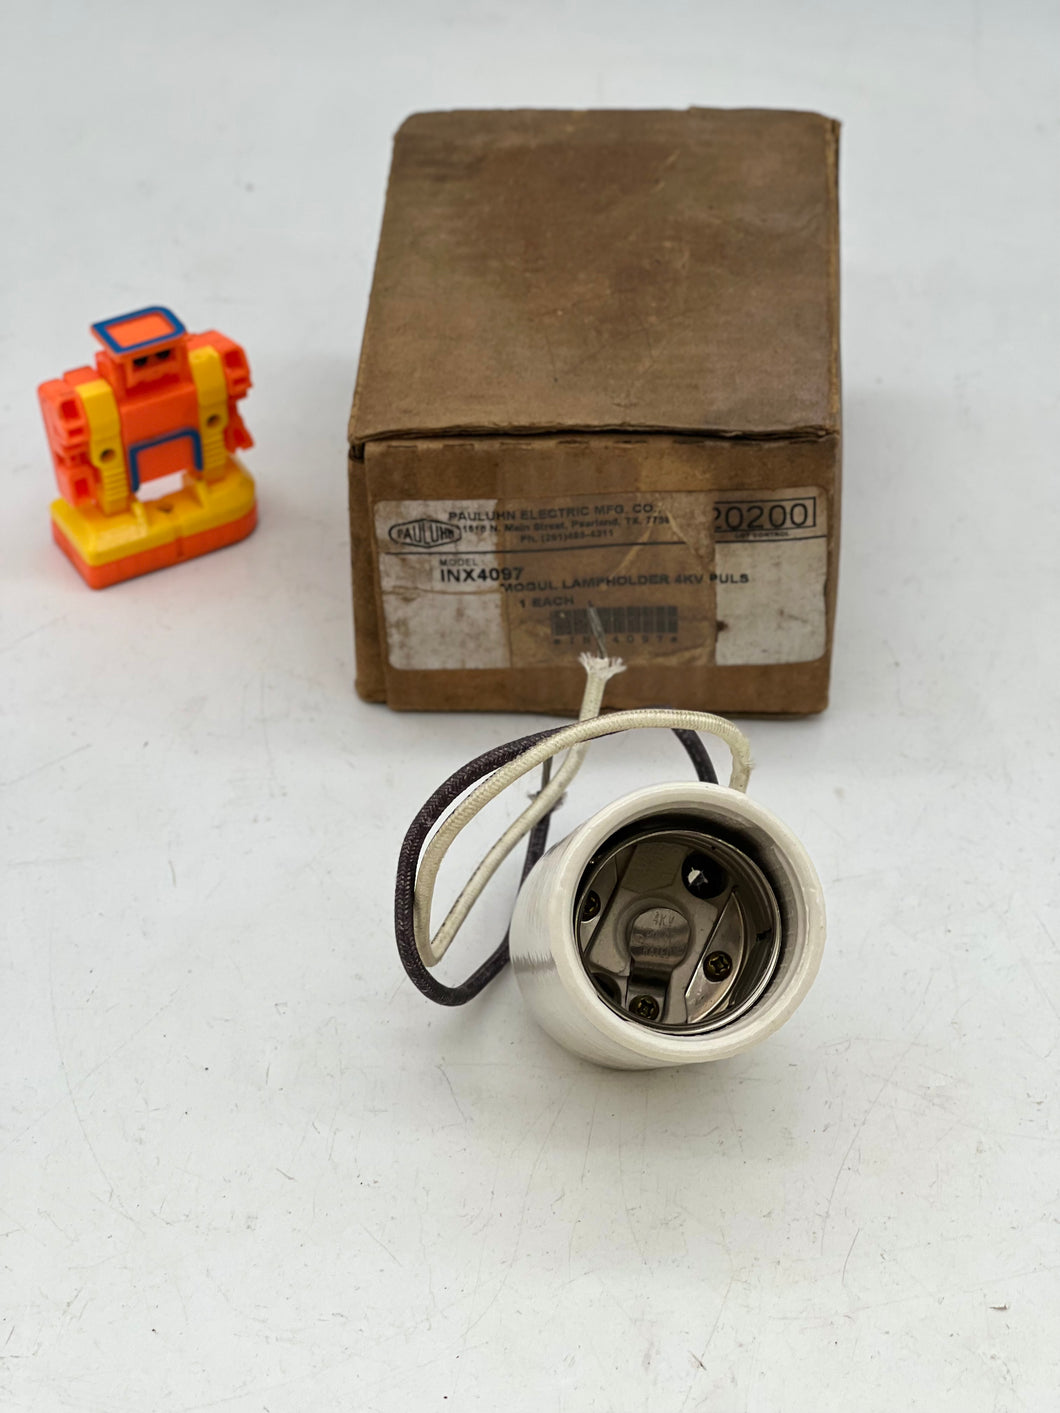 Pauluhn INX4097 Lamp Holder, 4KV (Open Box)